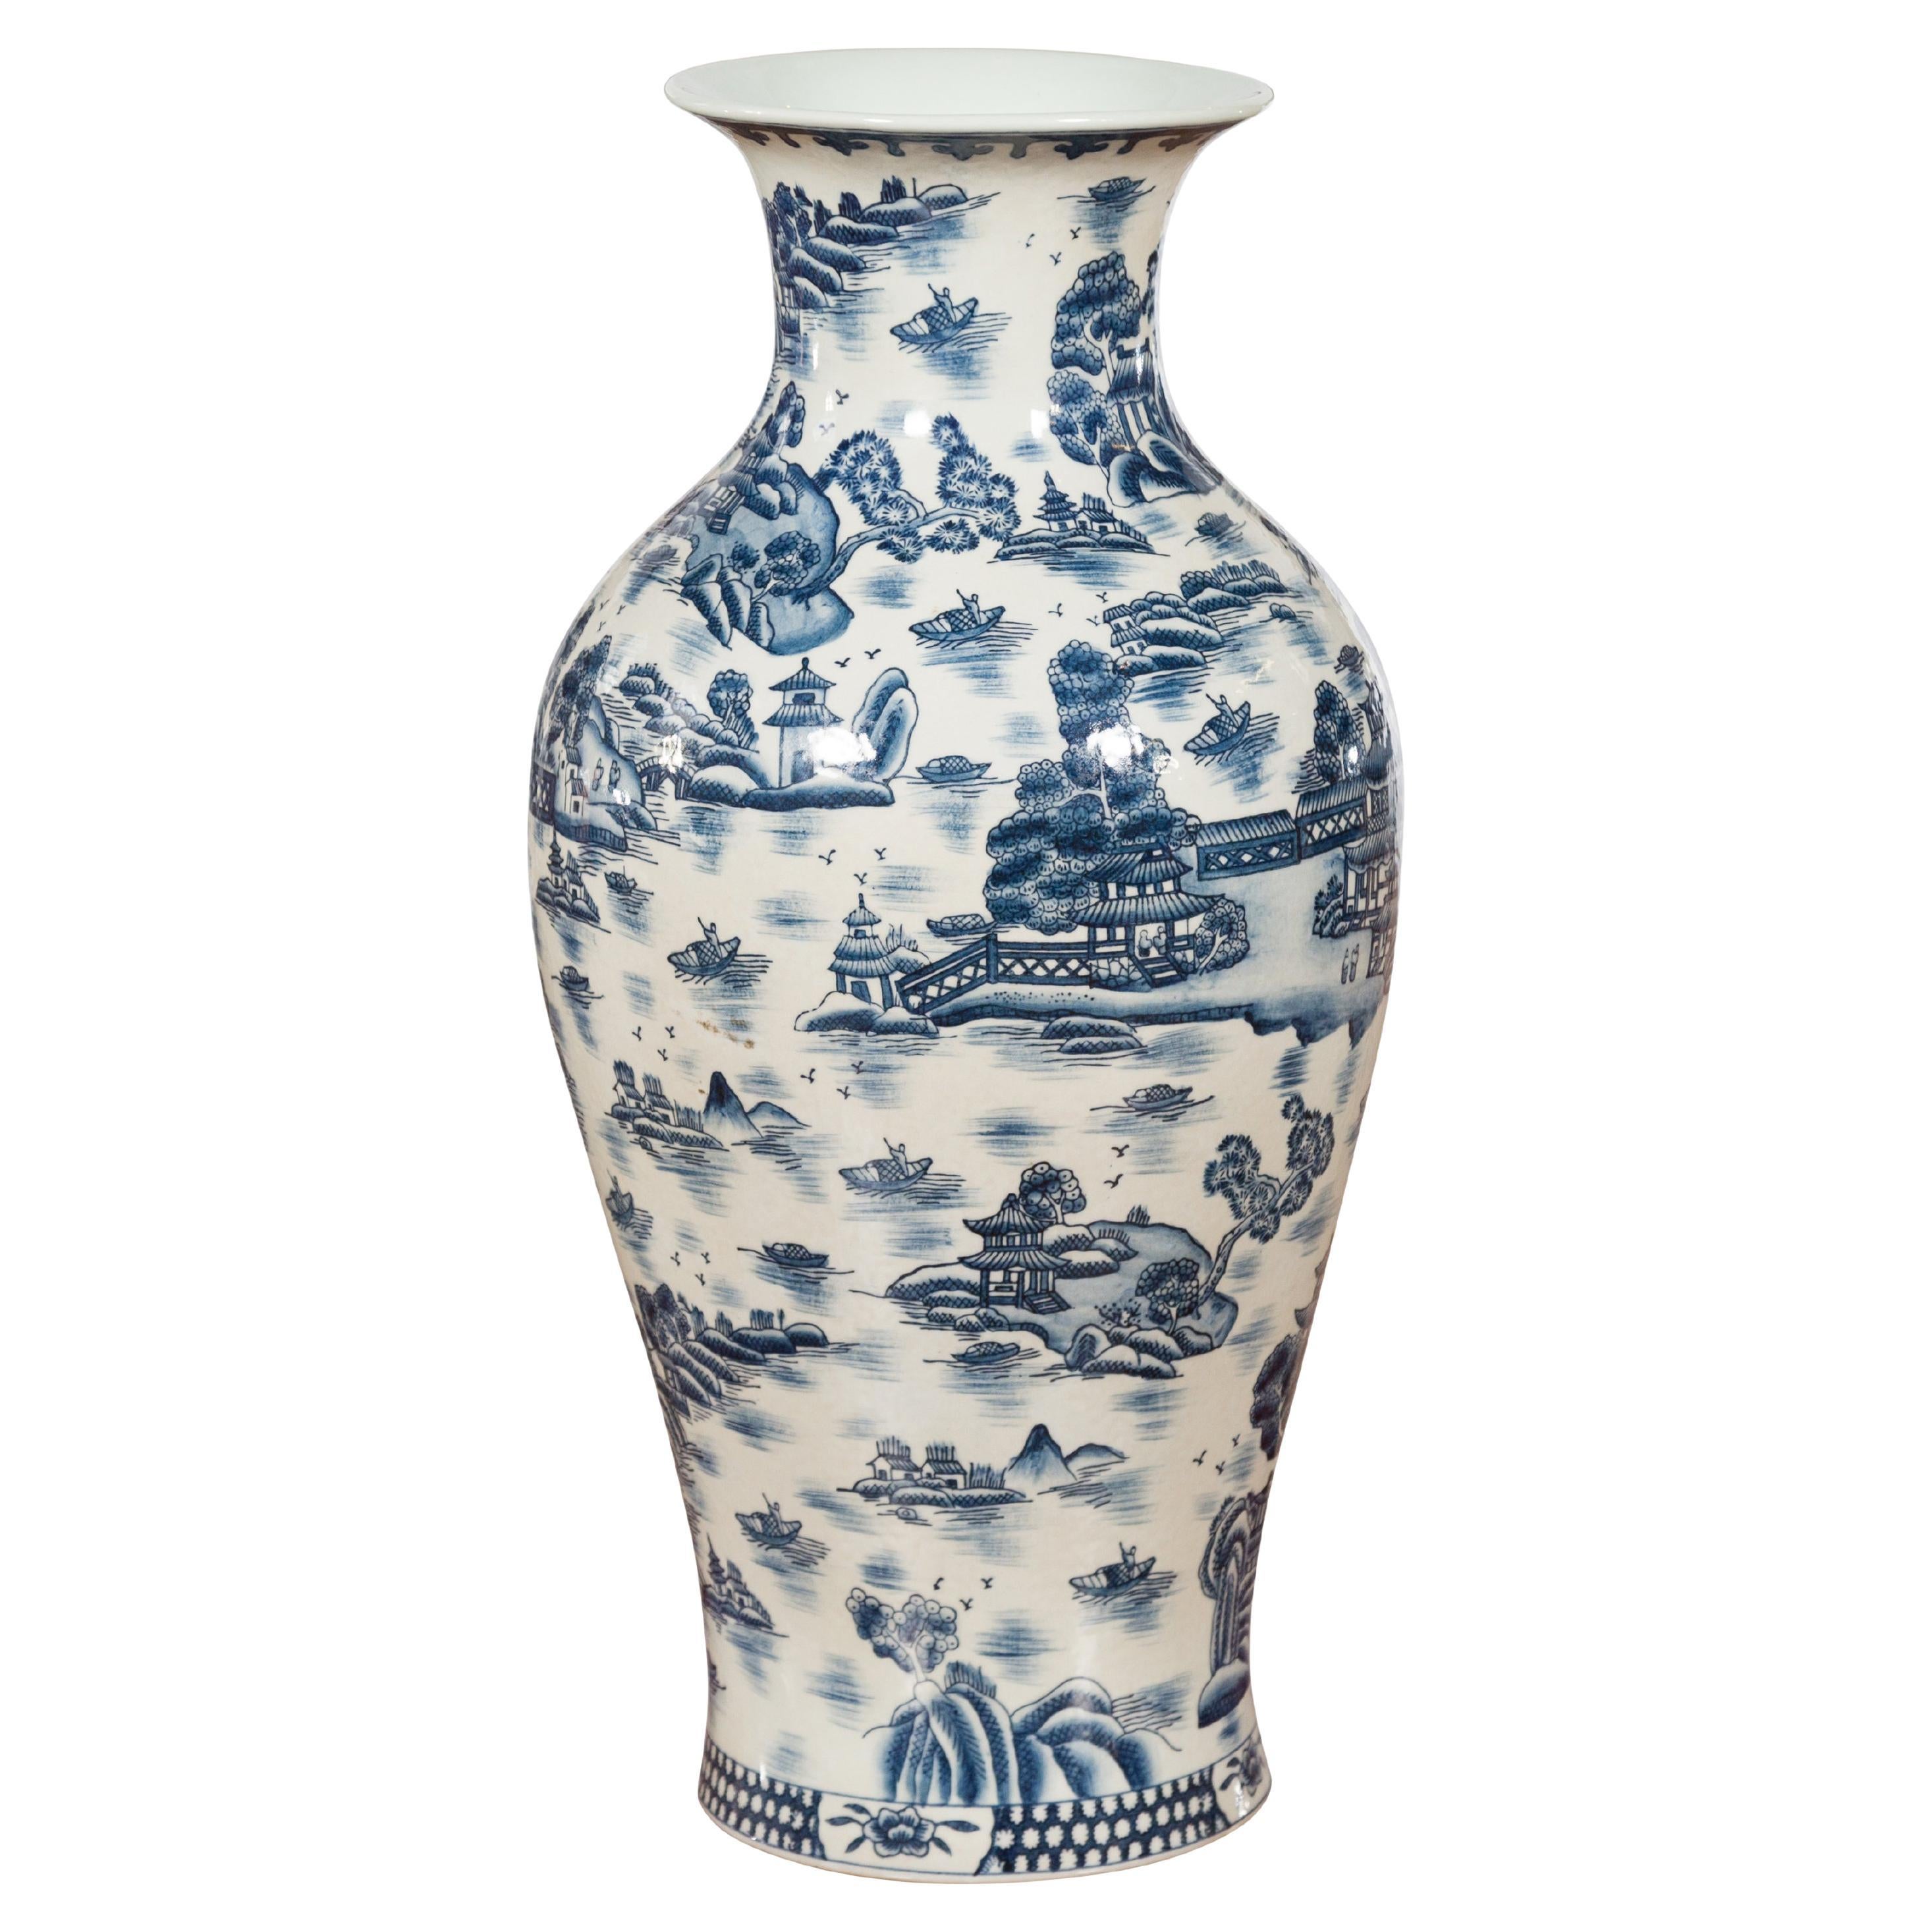 Chinesische Vintage-Porzellanvase aus blauem und weißem Porzellan mit Landschaften und Architekturen